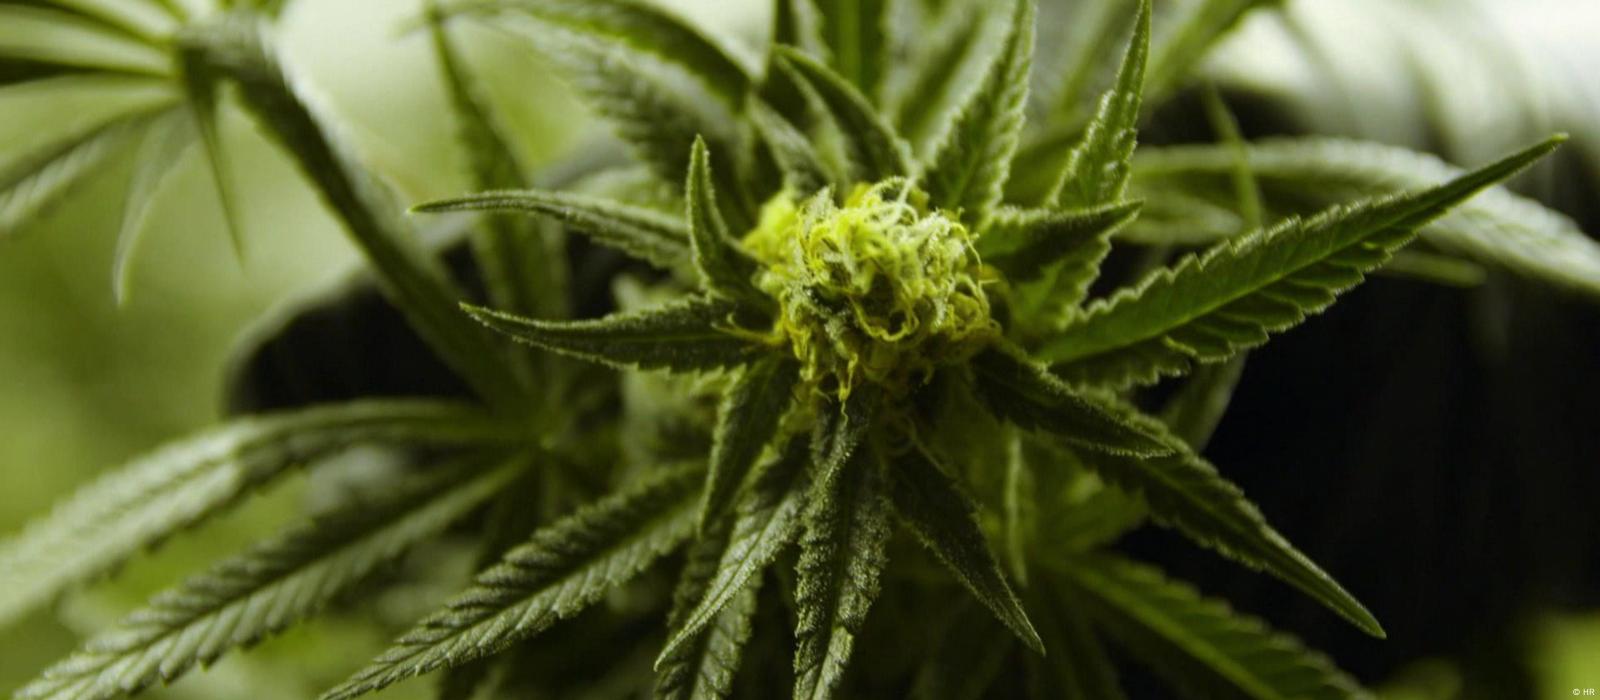 Cuáles son las ventajas del cannabis para fines medicinales